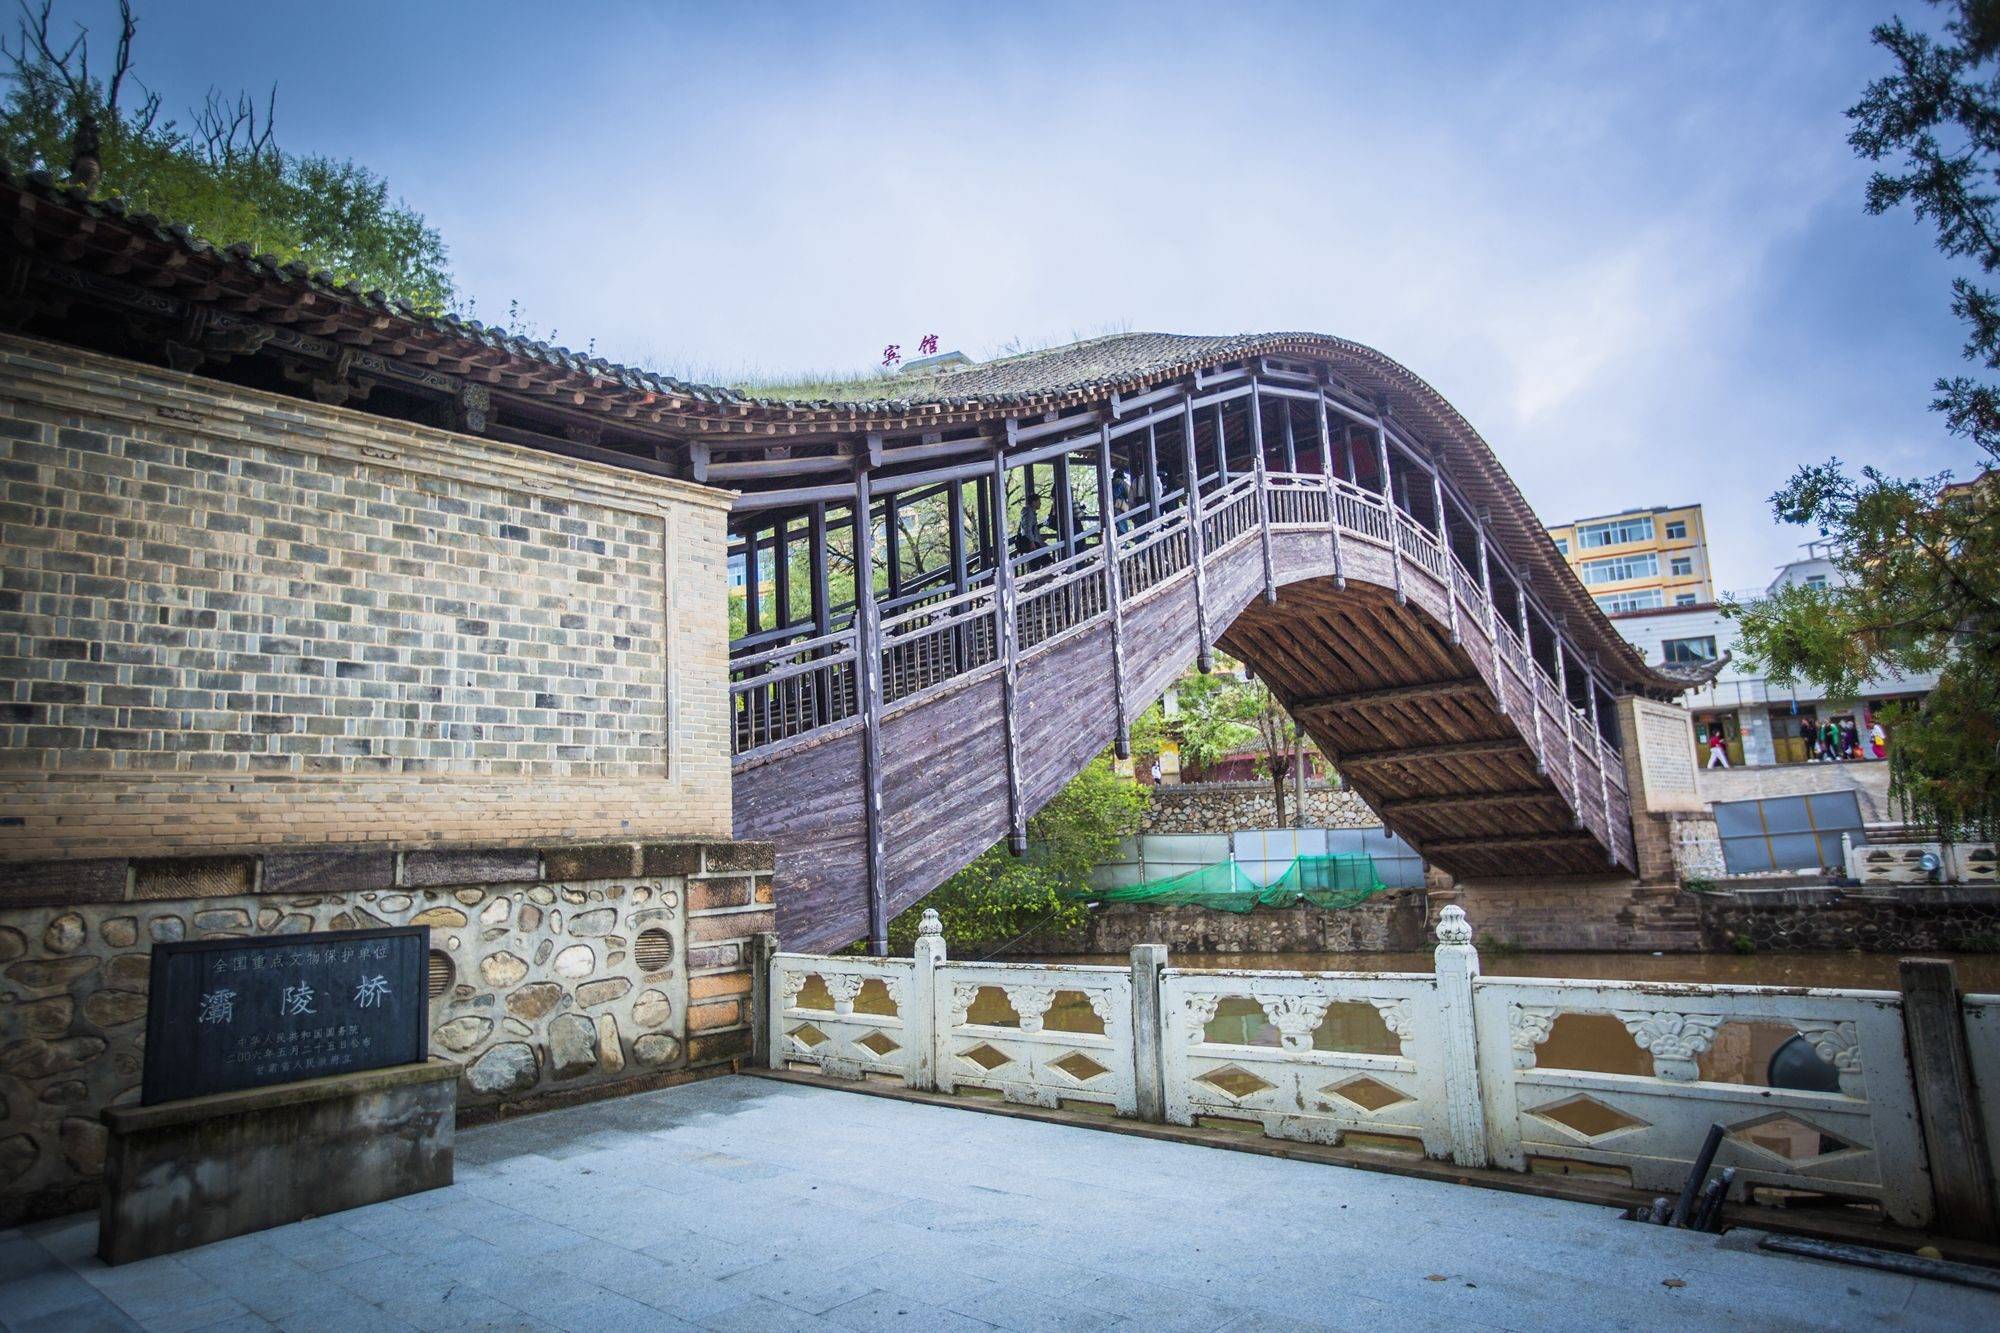 灞陵桥景区图片